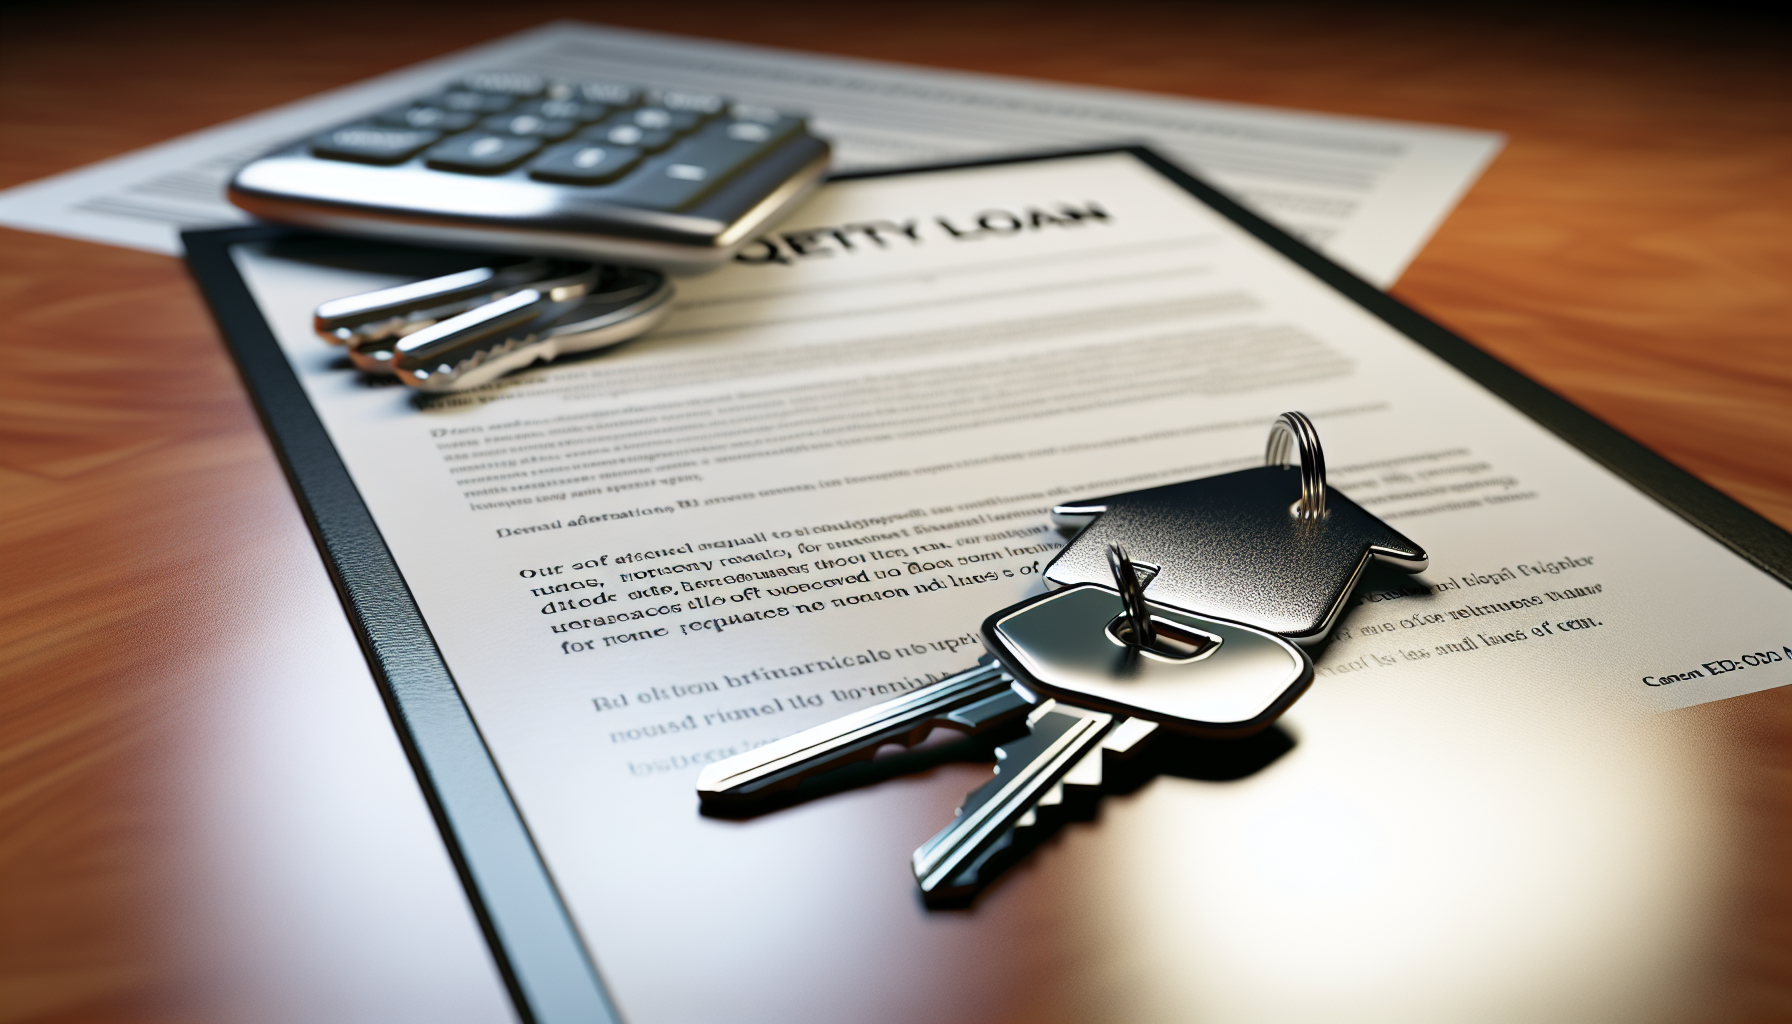 Home equity loan and house keys